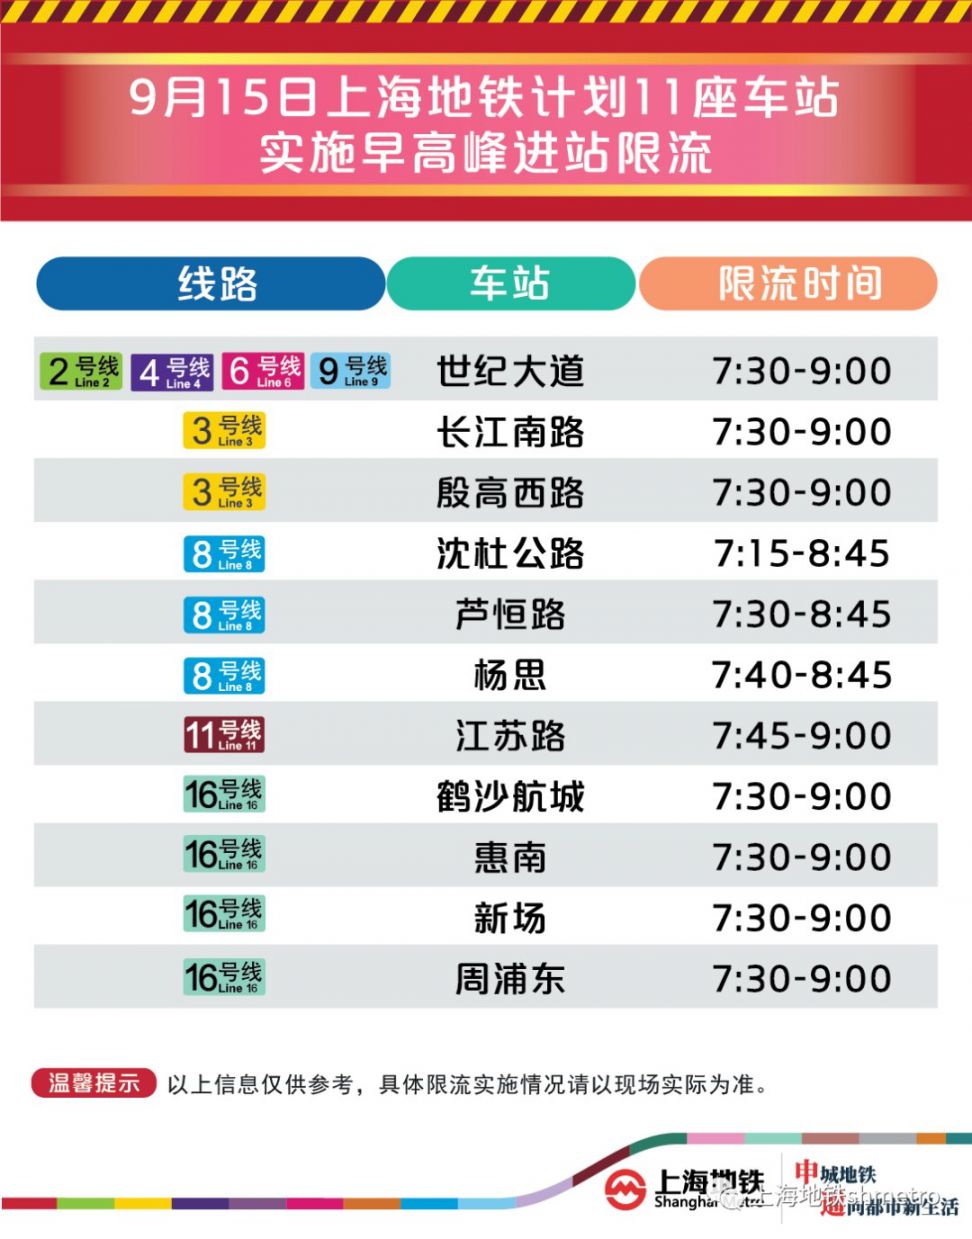 9月15日上海11座地铁站早高峰限流(附舒适度预告)